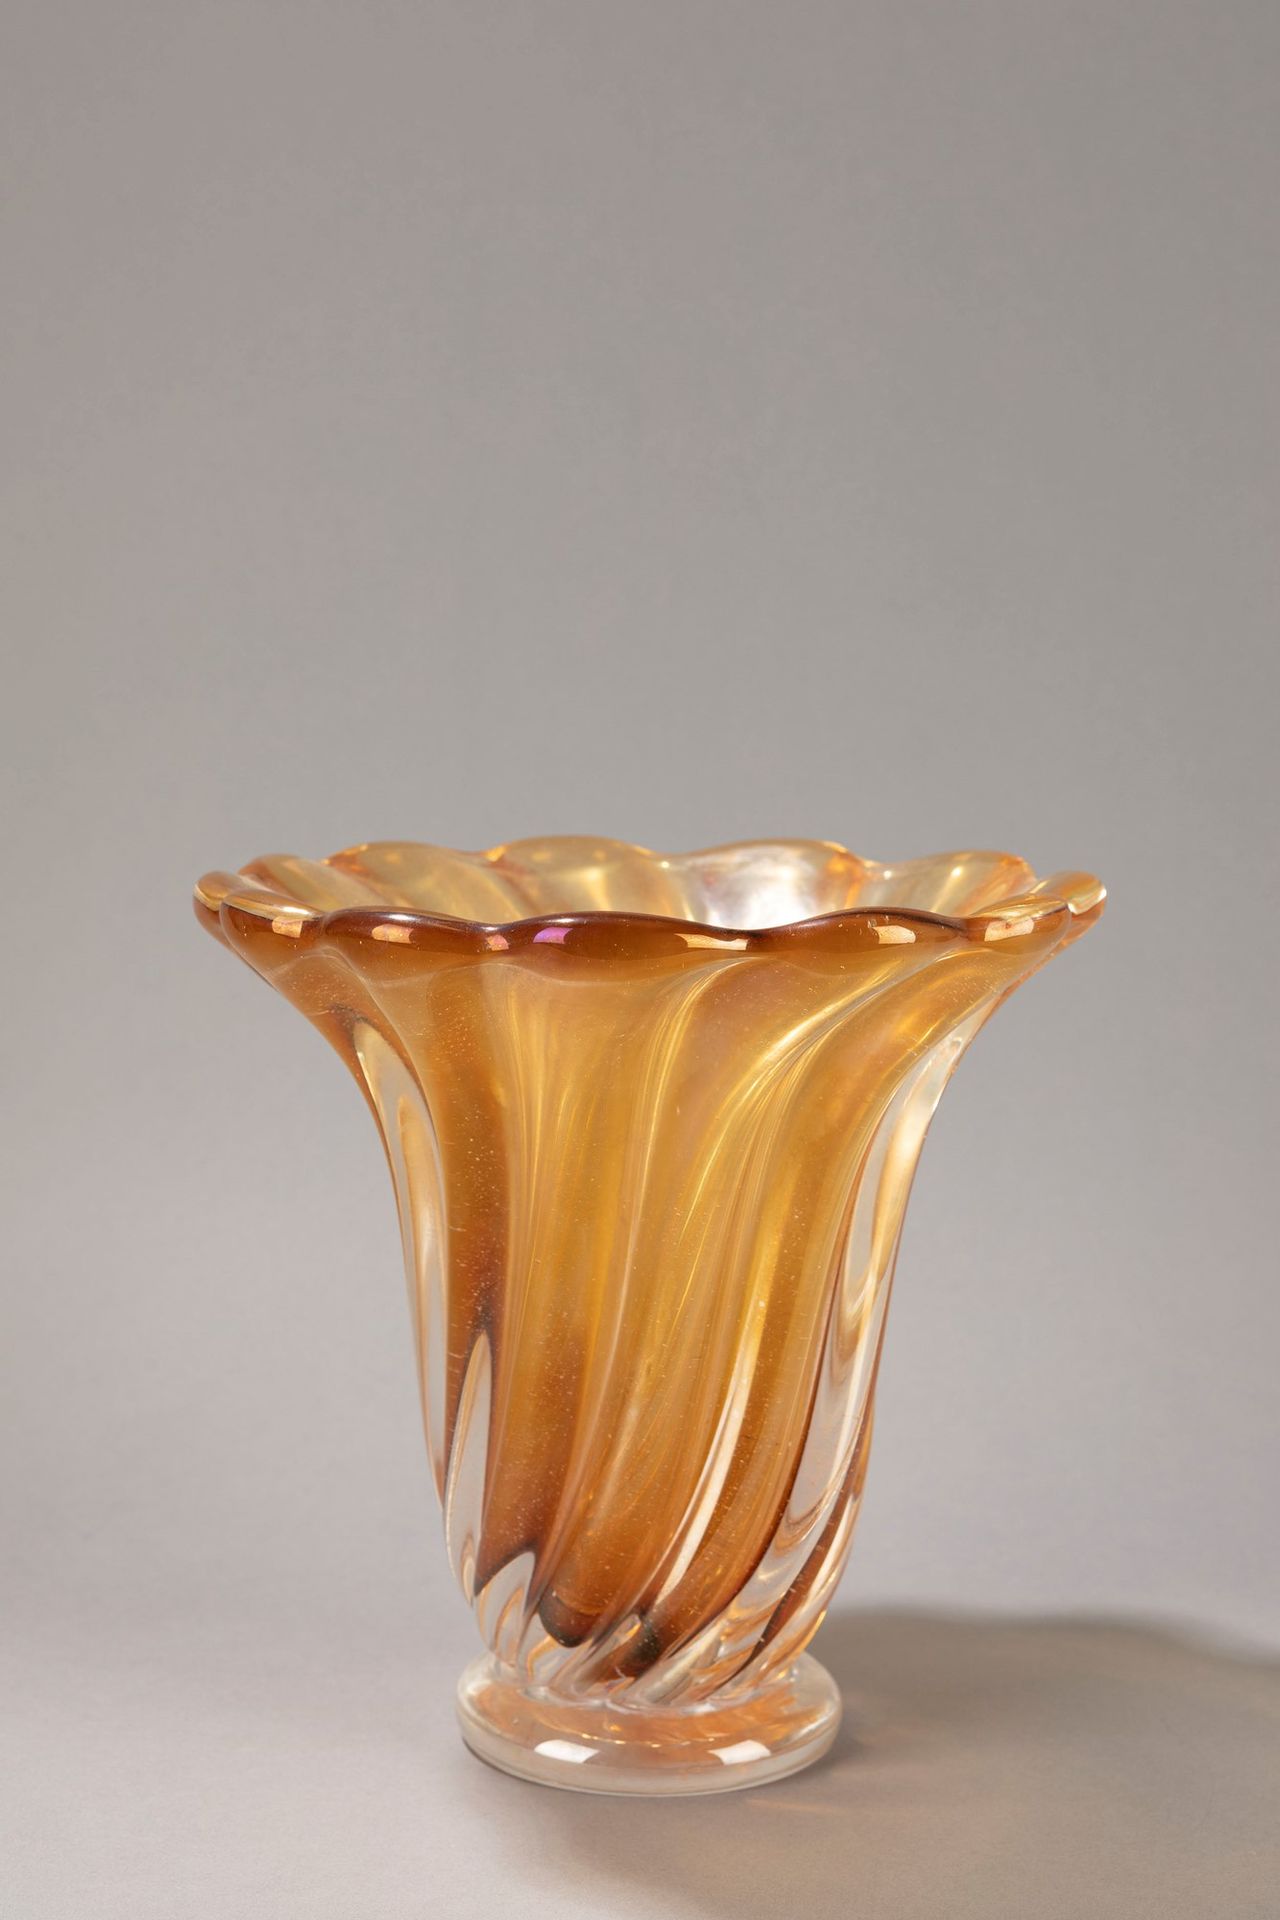 SEGUSO Vaso, 1950 ca.

H 24 x 22 cm 
vetro sommerso, colore ambrato iridescente.